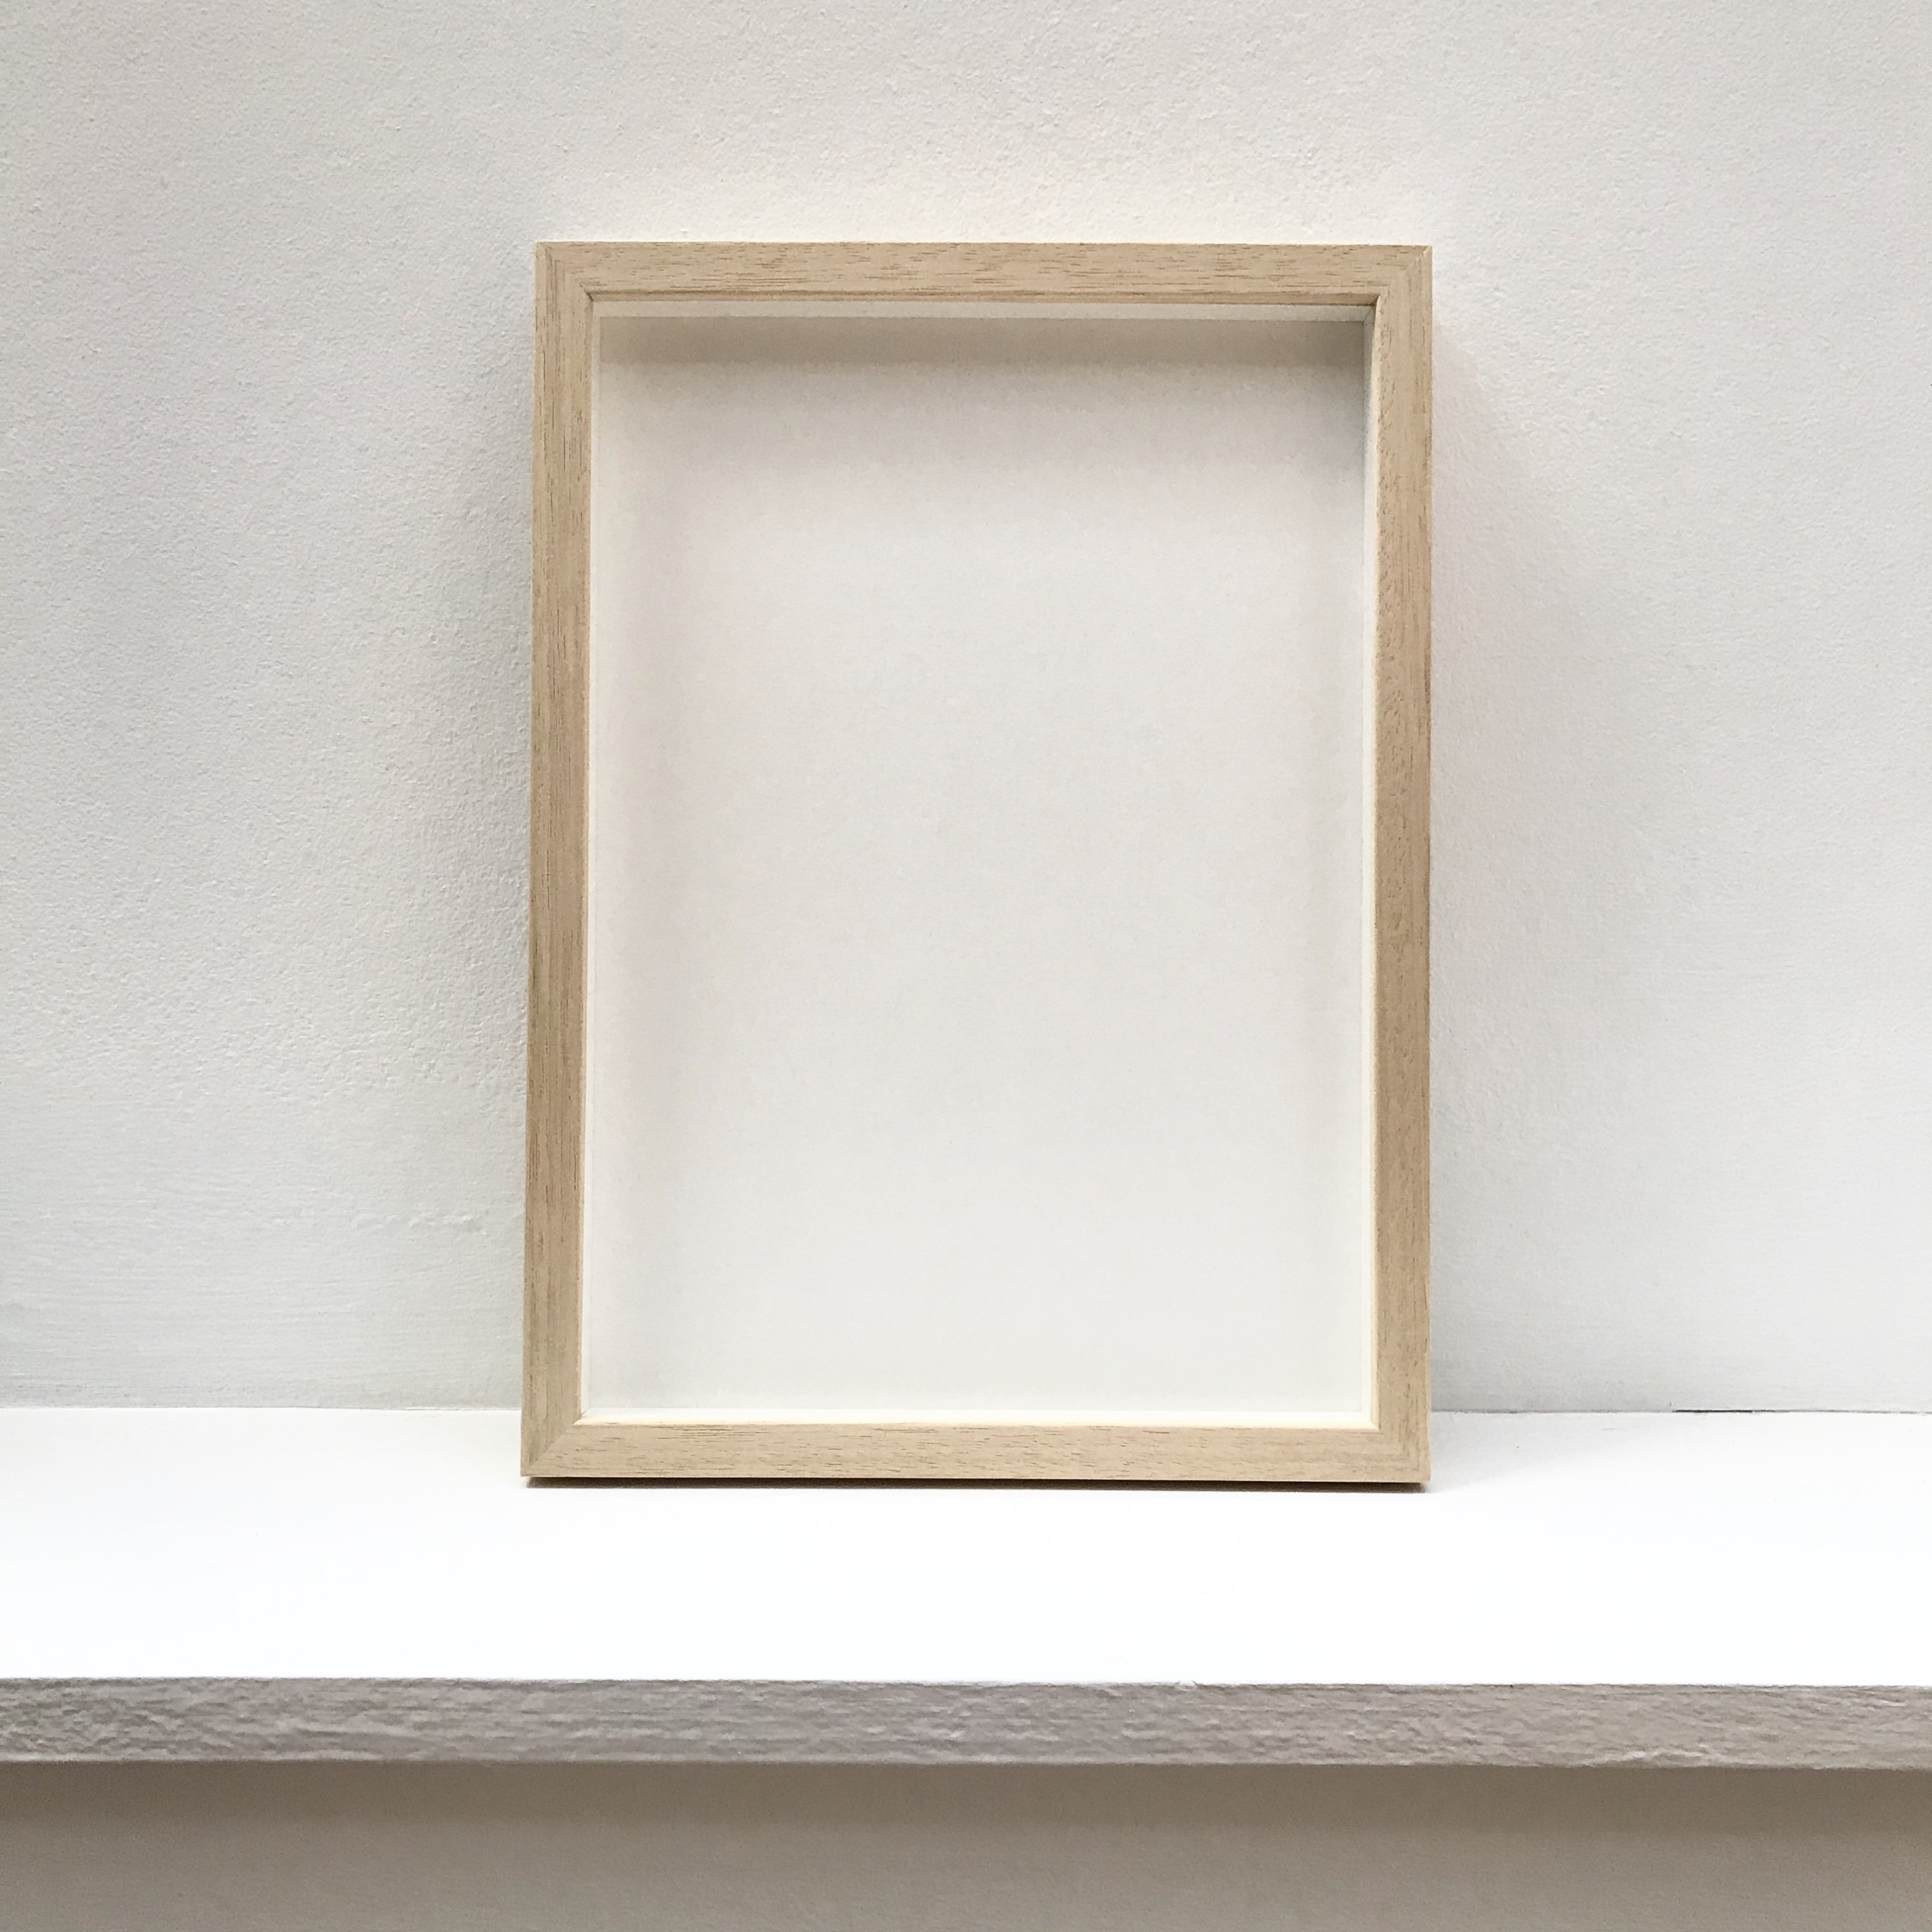 Marco de fotos de madera real blanca de 20 x 30 pulgadas de ancho de 0.75  pulgadas | Profundidad del marco interior de 0.5 pulgadas | Marco de fotos